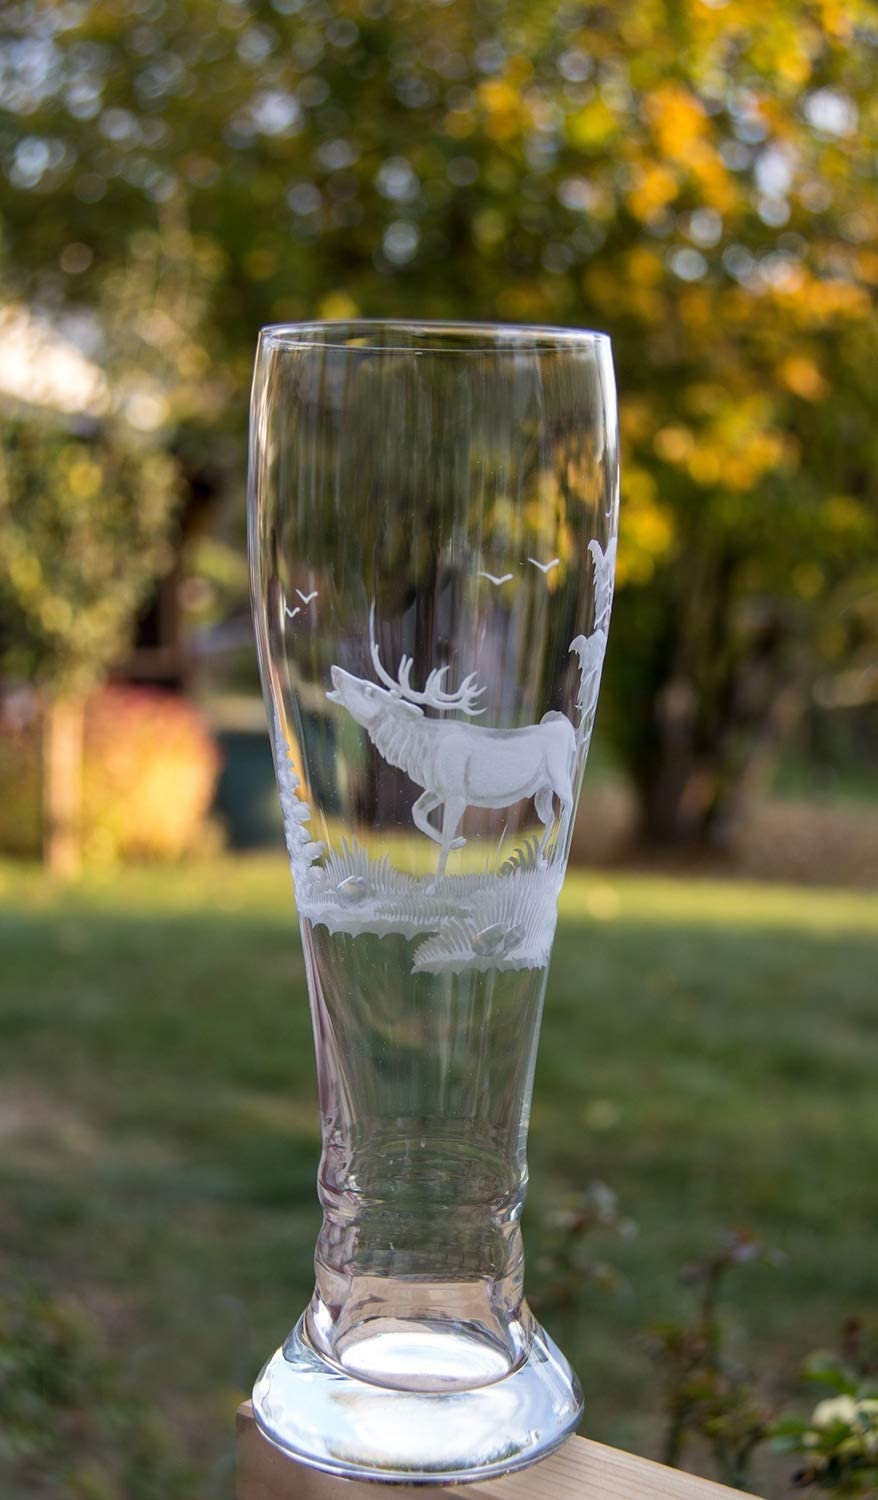 Glasbläserei Weber Weizenglas, Weißbierglas 0,5 L, Weizenbierglas,  Jagdgravur Handarbeit Schott Bavaria -  Österreich